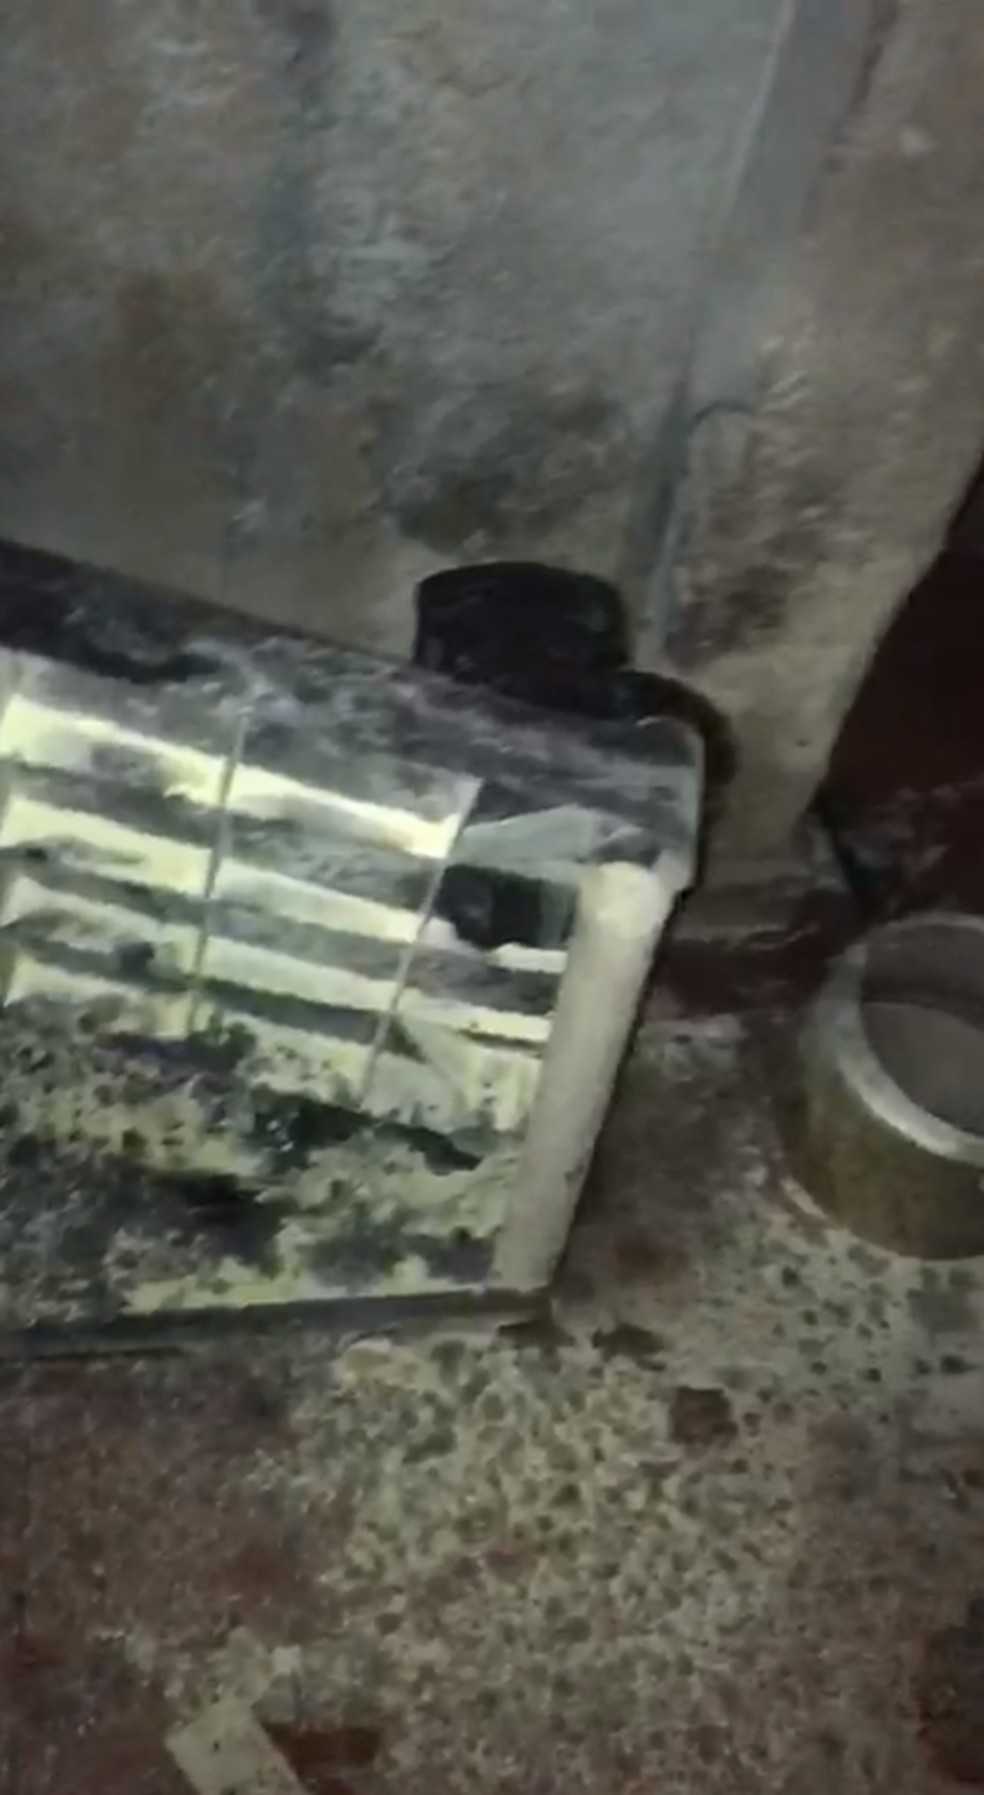 Cozinha pegou fogo e família ficou gravemente ferida em Santos, SP — Foto: Arquivo pessoal 